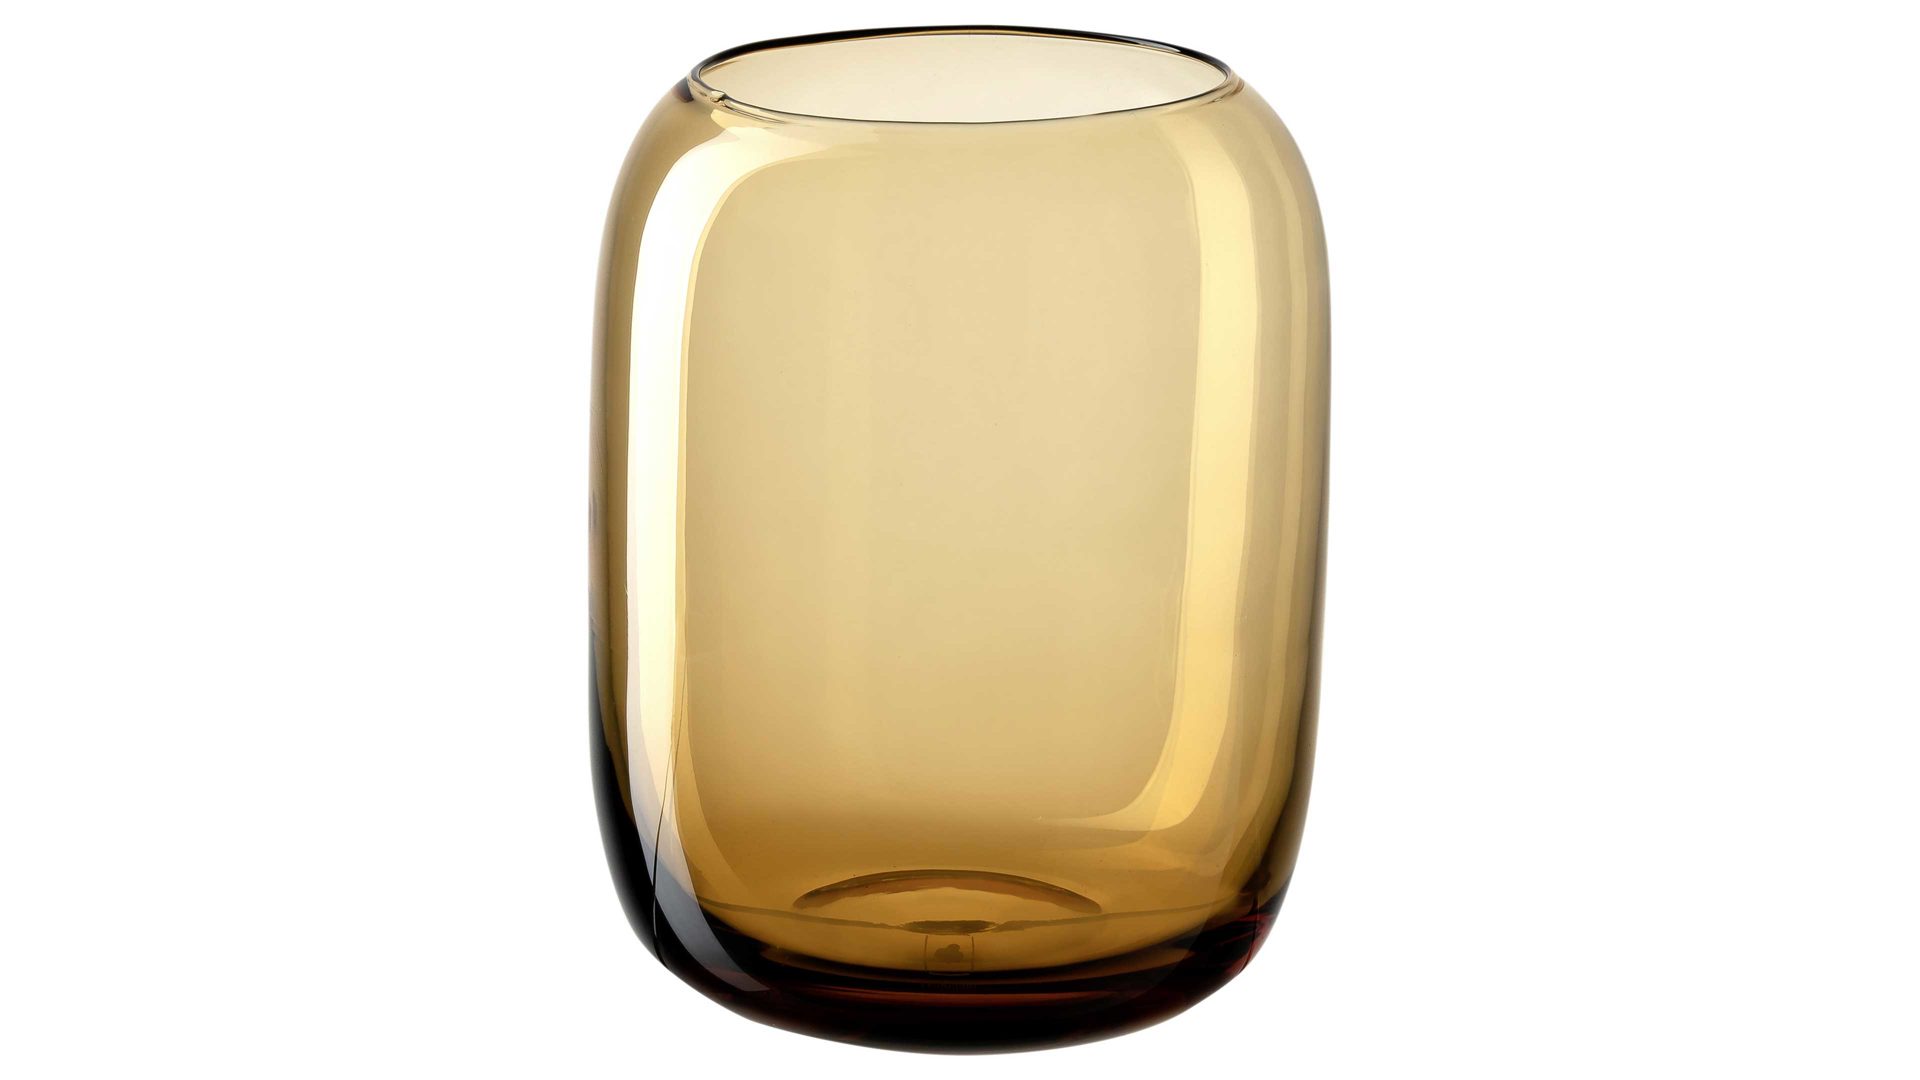 Windlicht Leonardo | glaskoch aus Glas in Hellbraun LEONARDO Windlicht Camminata amberfarbenes Glas – Höhe ca. 18 cm